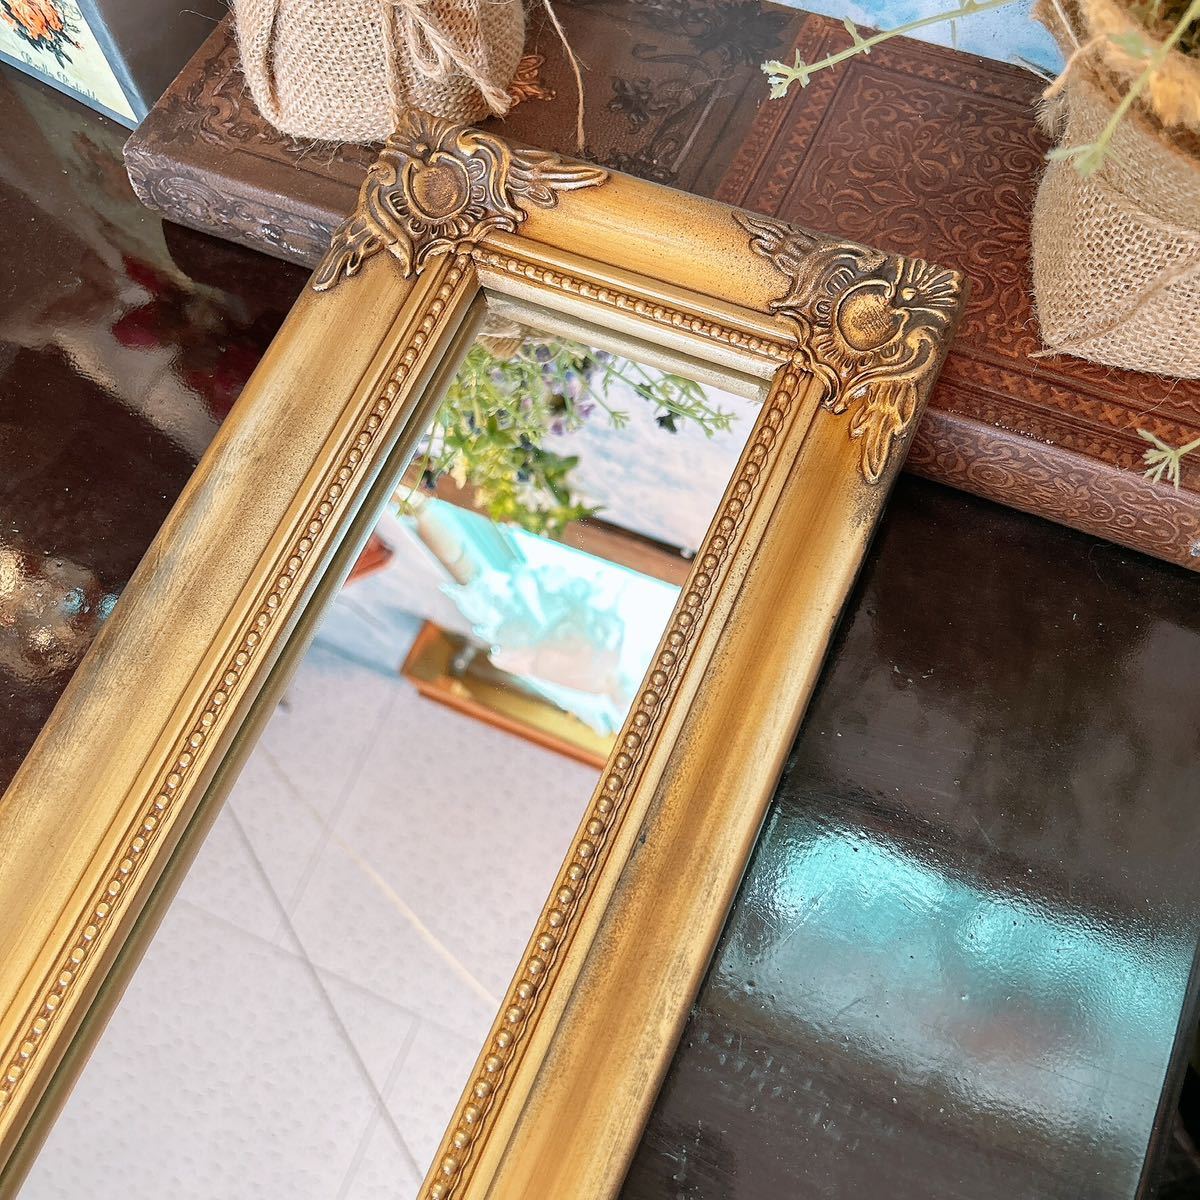 アンティークな部屋 おしゃれな鏡 一面鏡 No.2 ウォールミラー 1枚 壁掛け鏡 gold #インテリア装飾品 #ドレッサーミラー #ウォールミラー_画像3